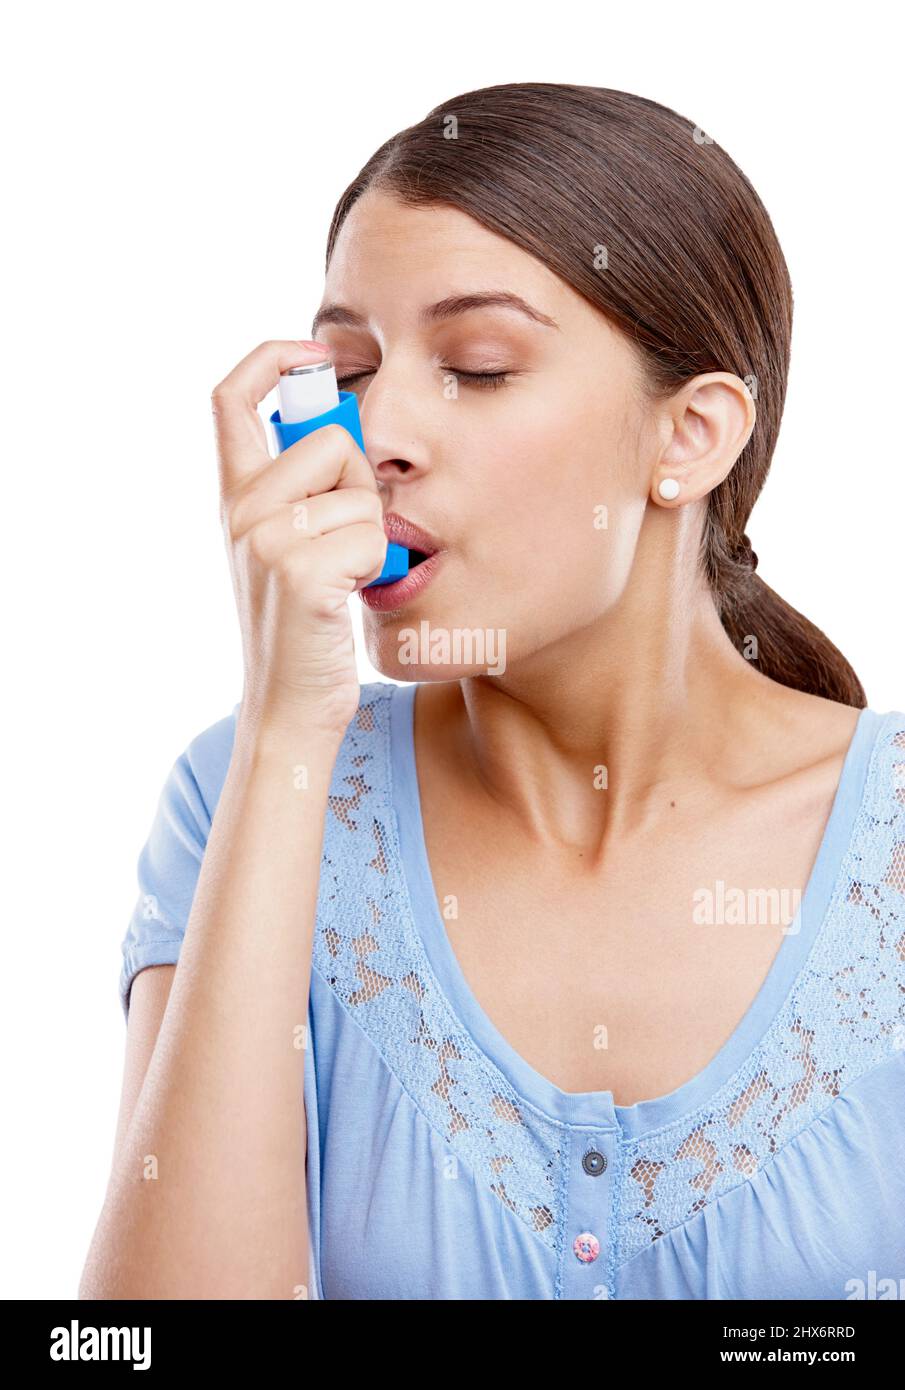 Zum Glück hatte sie ihren Inhalator dabei. Studioaufnahme einer attraktiven jungen Frau, die einen Asthma-Inhalator verwendet. Stockfoto